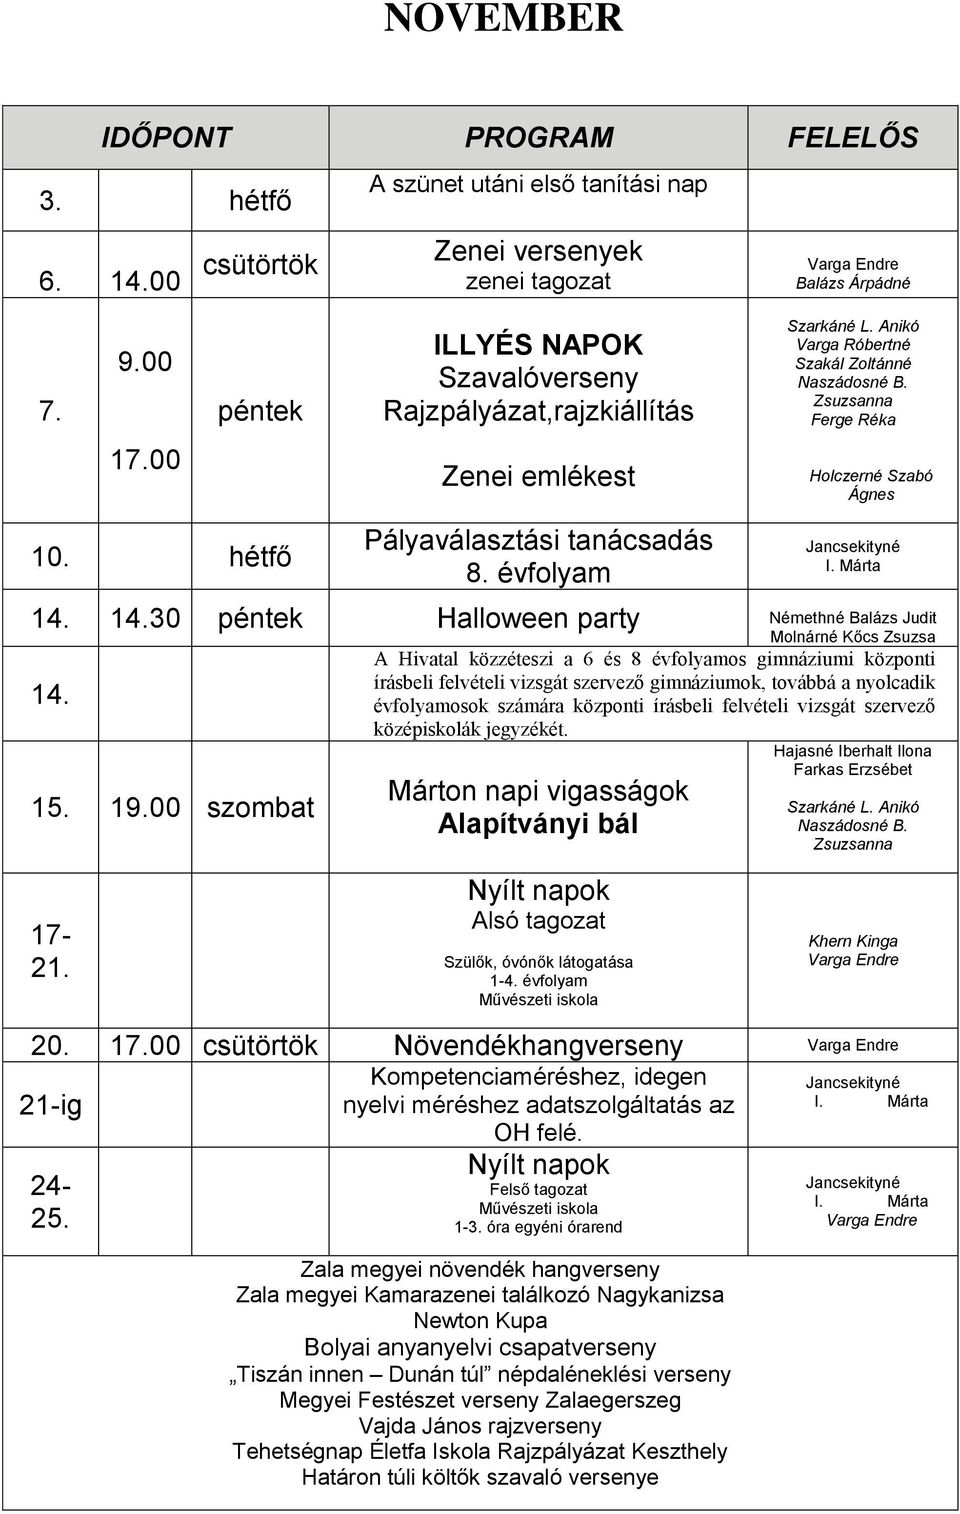 14.30 péntek Halloween party Némethné Balázs Judit Molnárné Kőcs Zsuzsa 14. 15. 19.